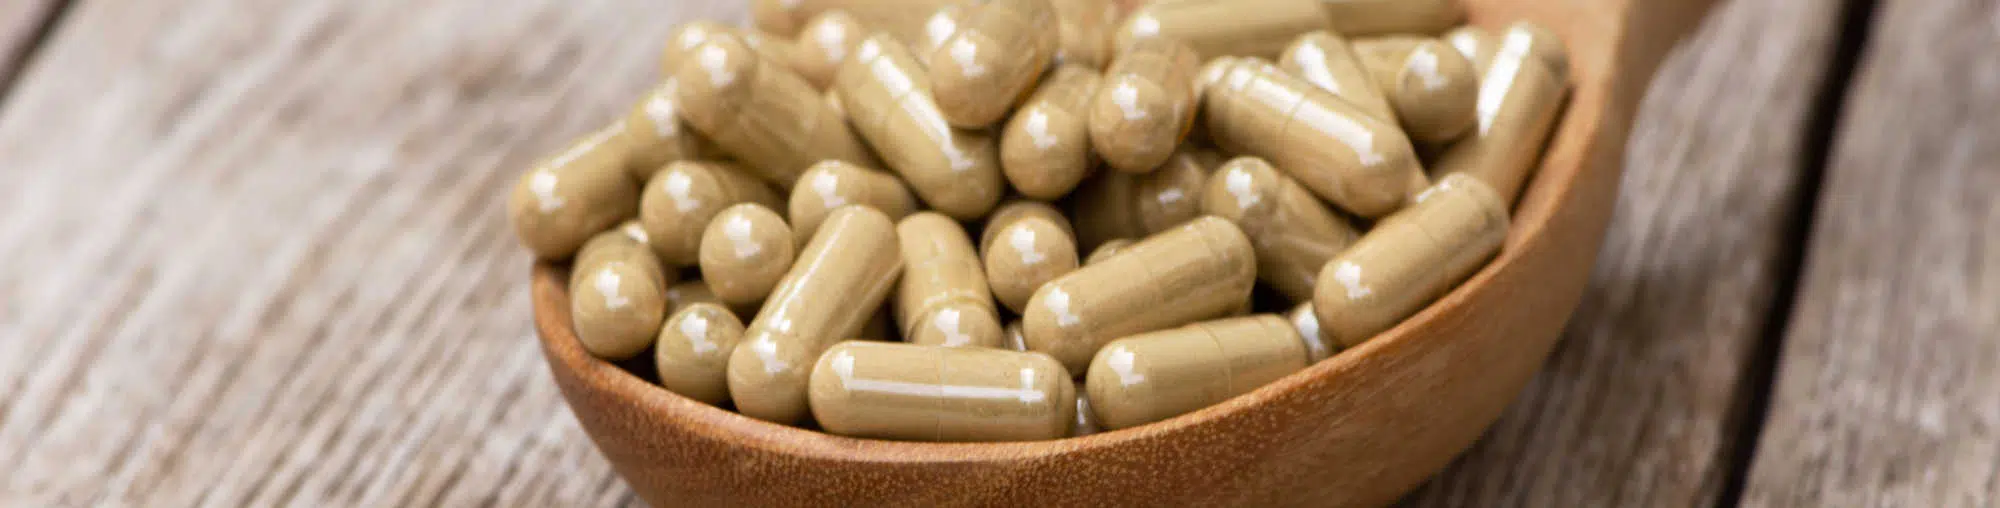 image of uei kratom capsules